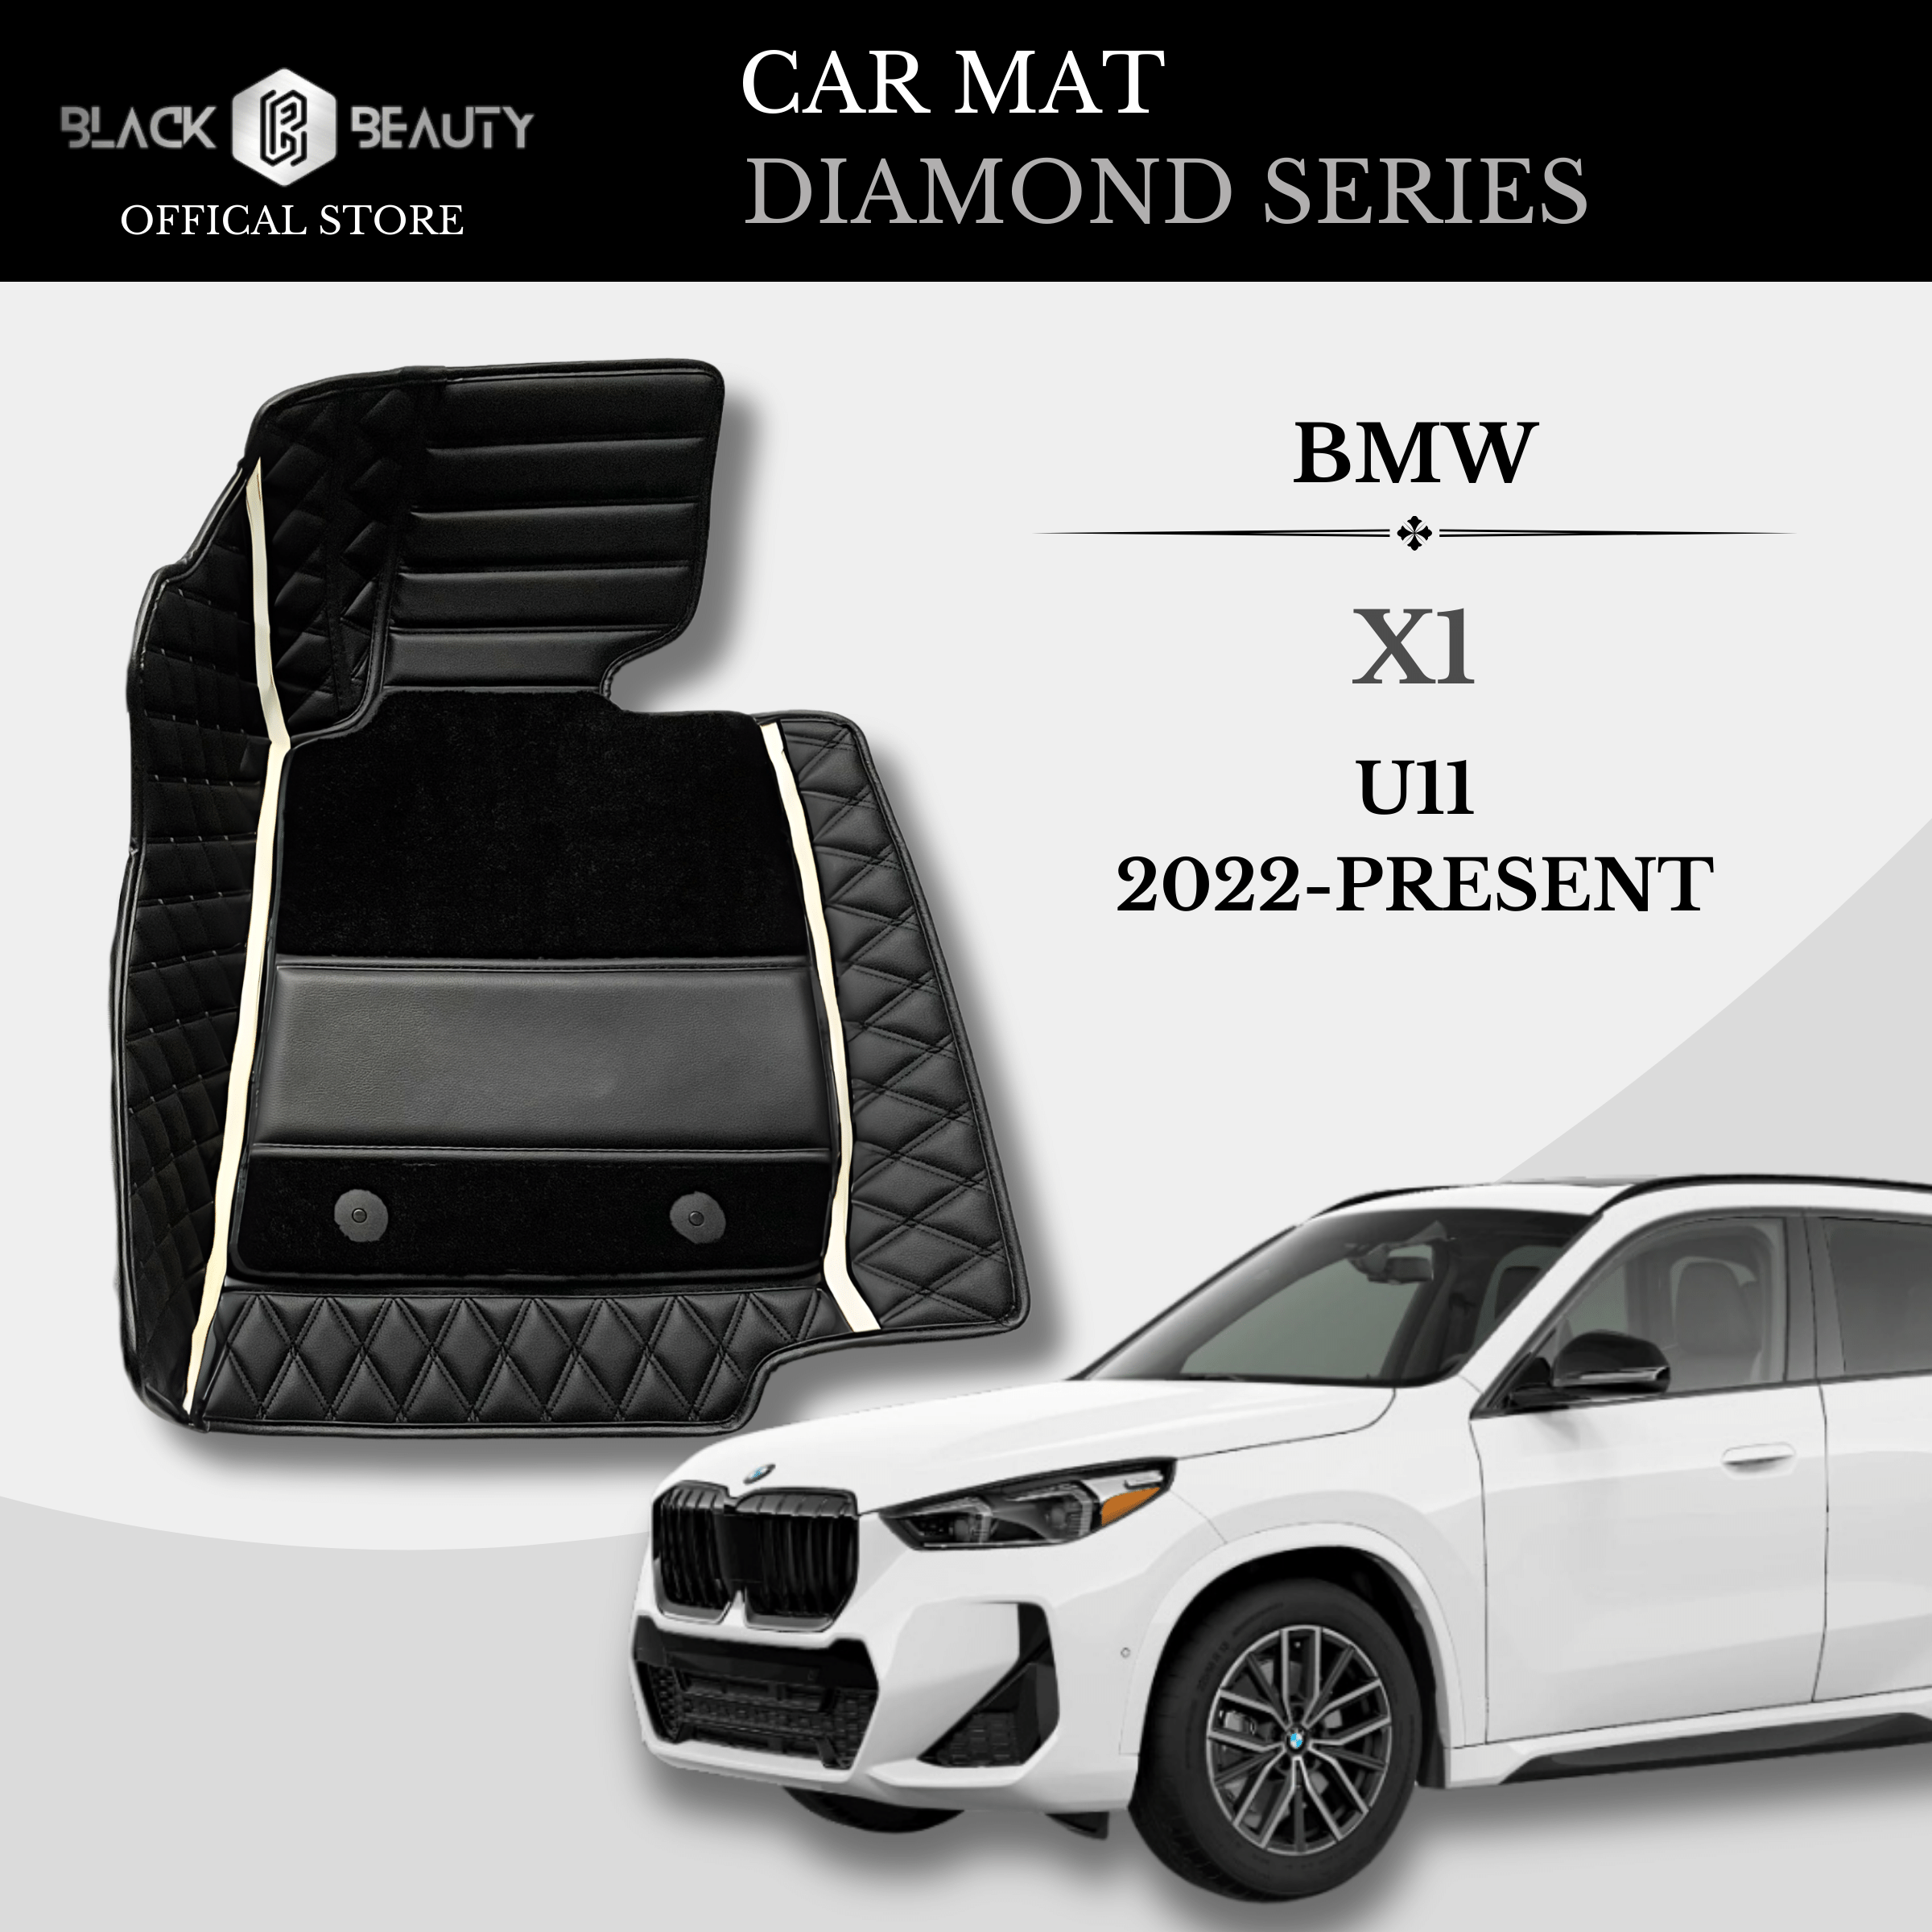 BMW X1 U11 (2022-Present) - Diamond Series Car Mat